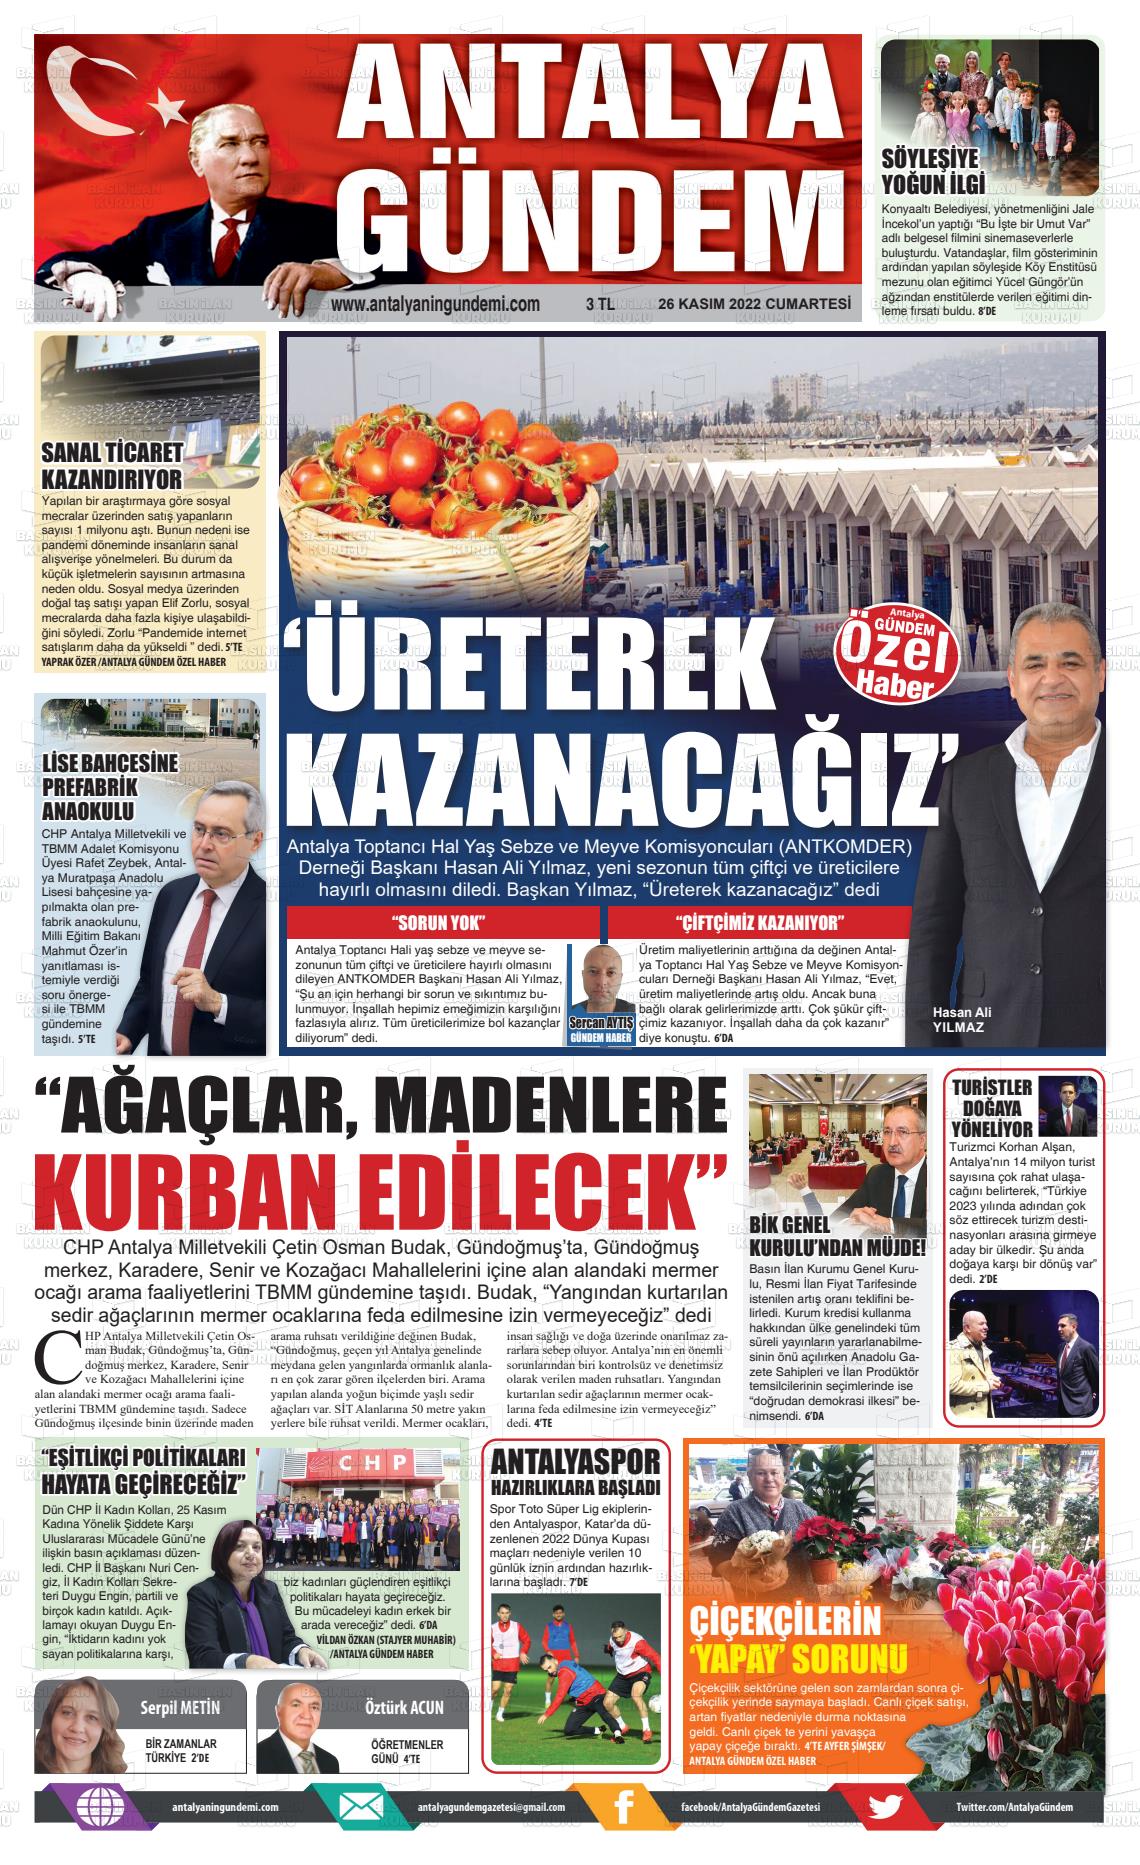 26 Kasım 2022 Antalya'nın Gündemi Gazete Manşeti